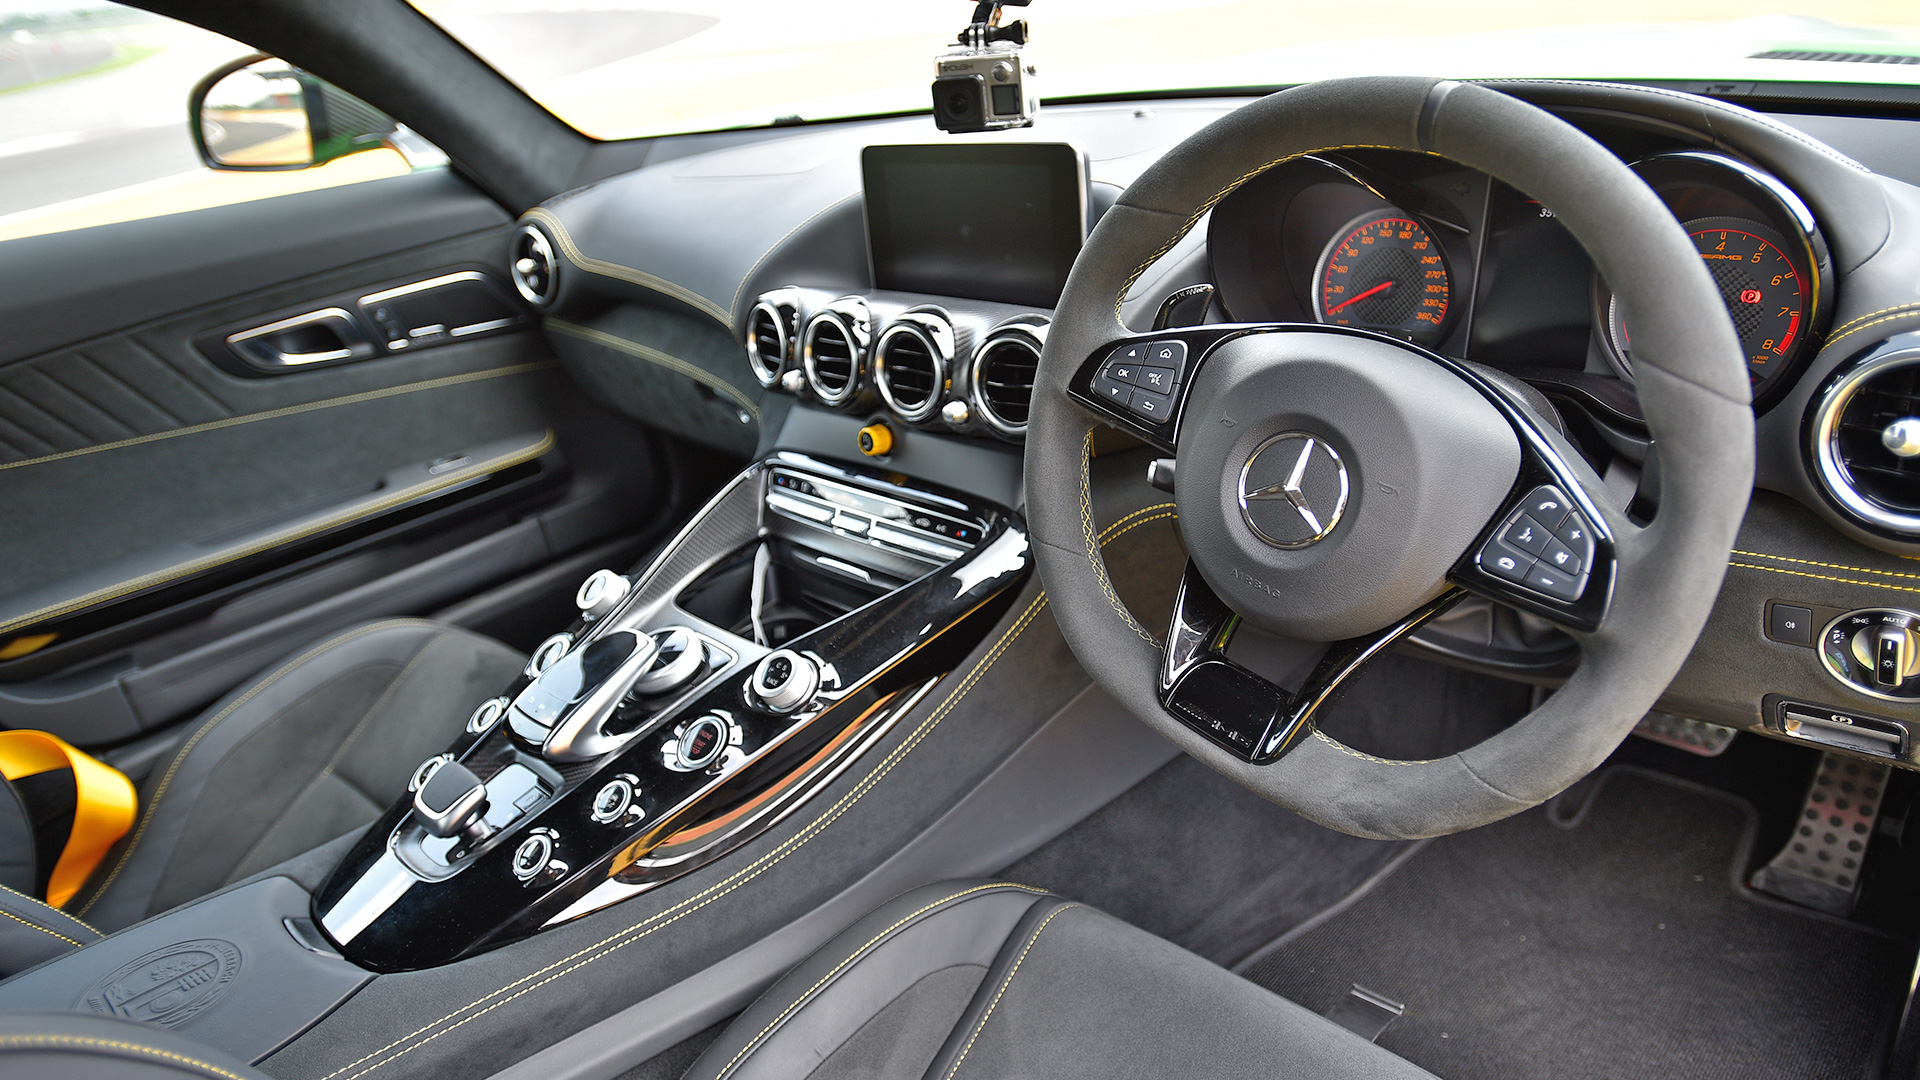 Mercedes Benz Amg Gt 17 R Interior Car Photos Overdrive